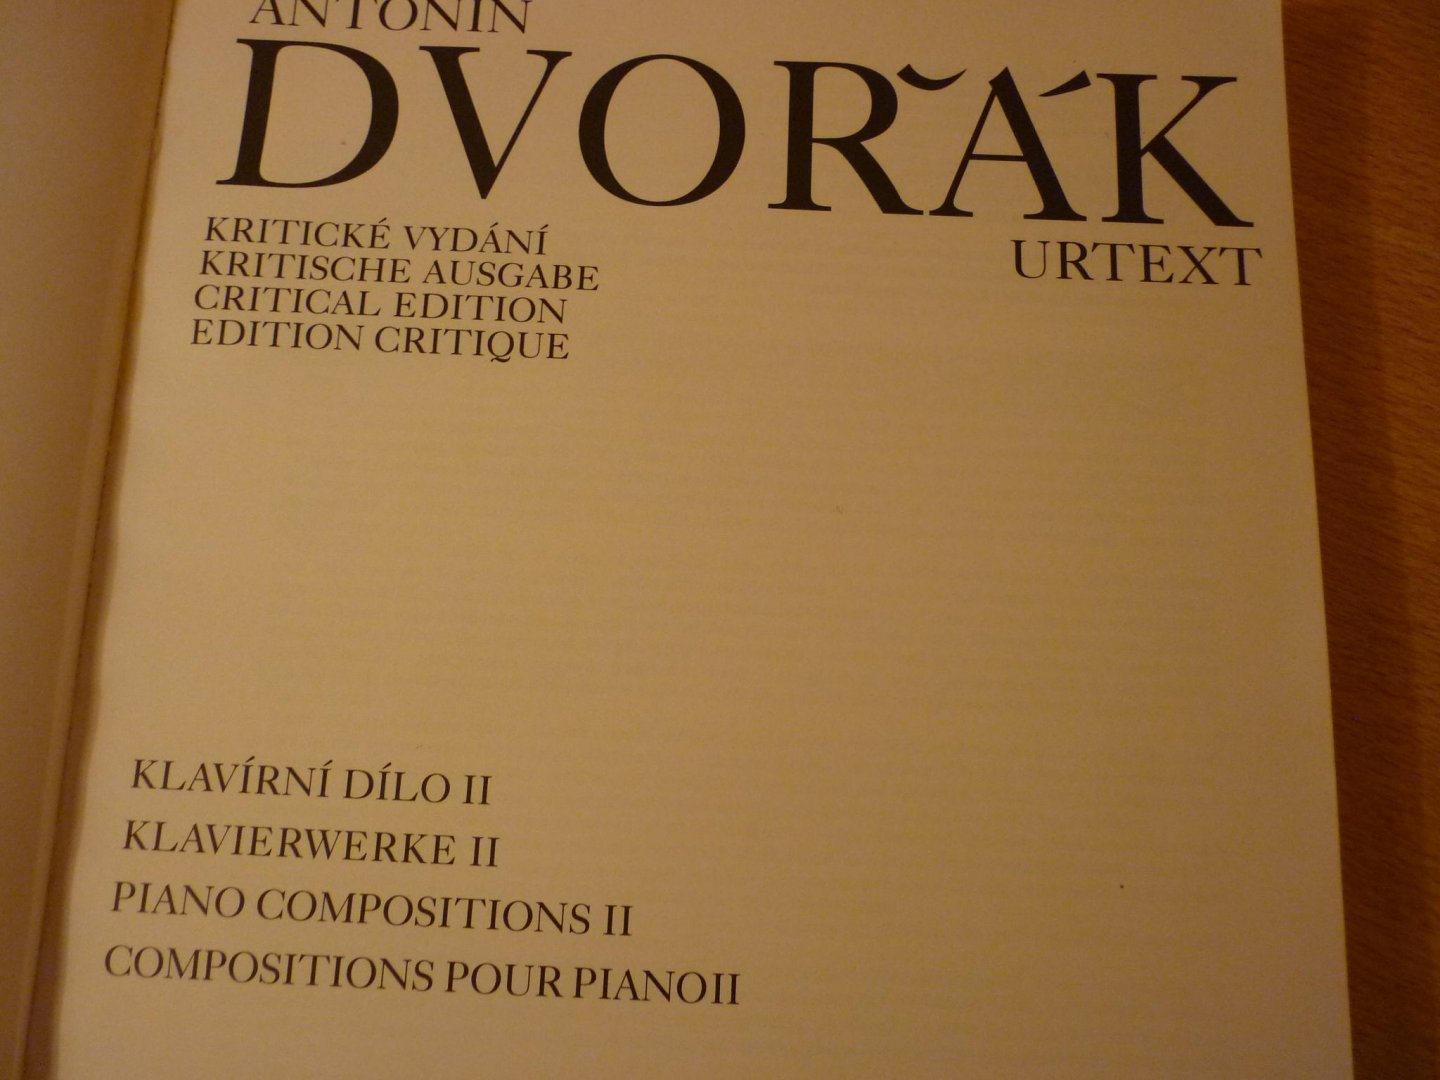 Dvorak; Antonín (1841 – 1904) - Klavierwerke - Deel I; Kritische Ausgabe Sonderanfertigung